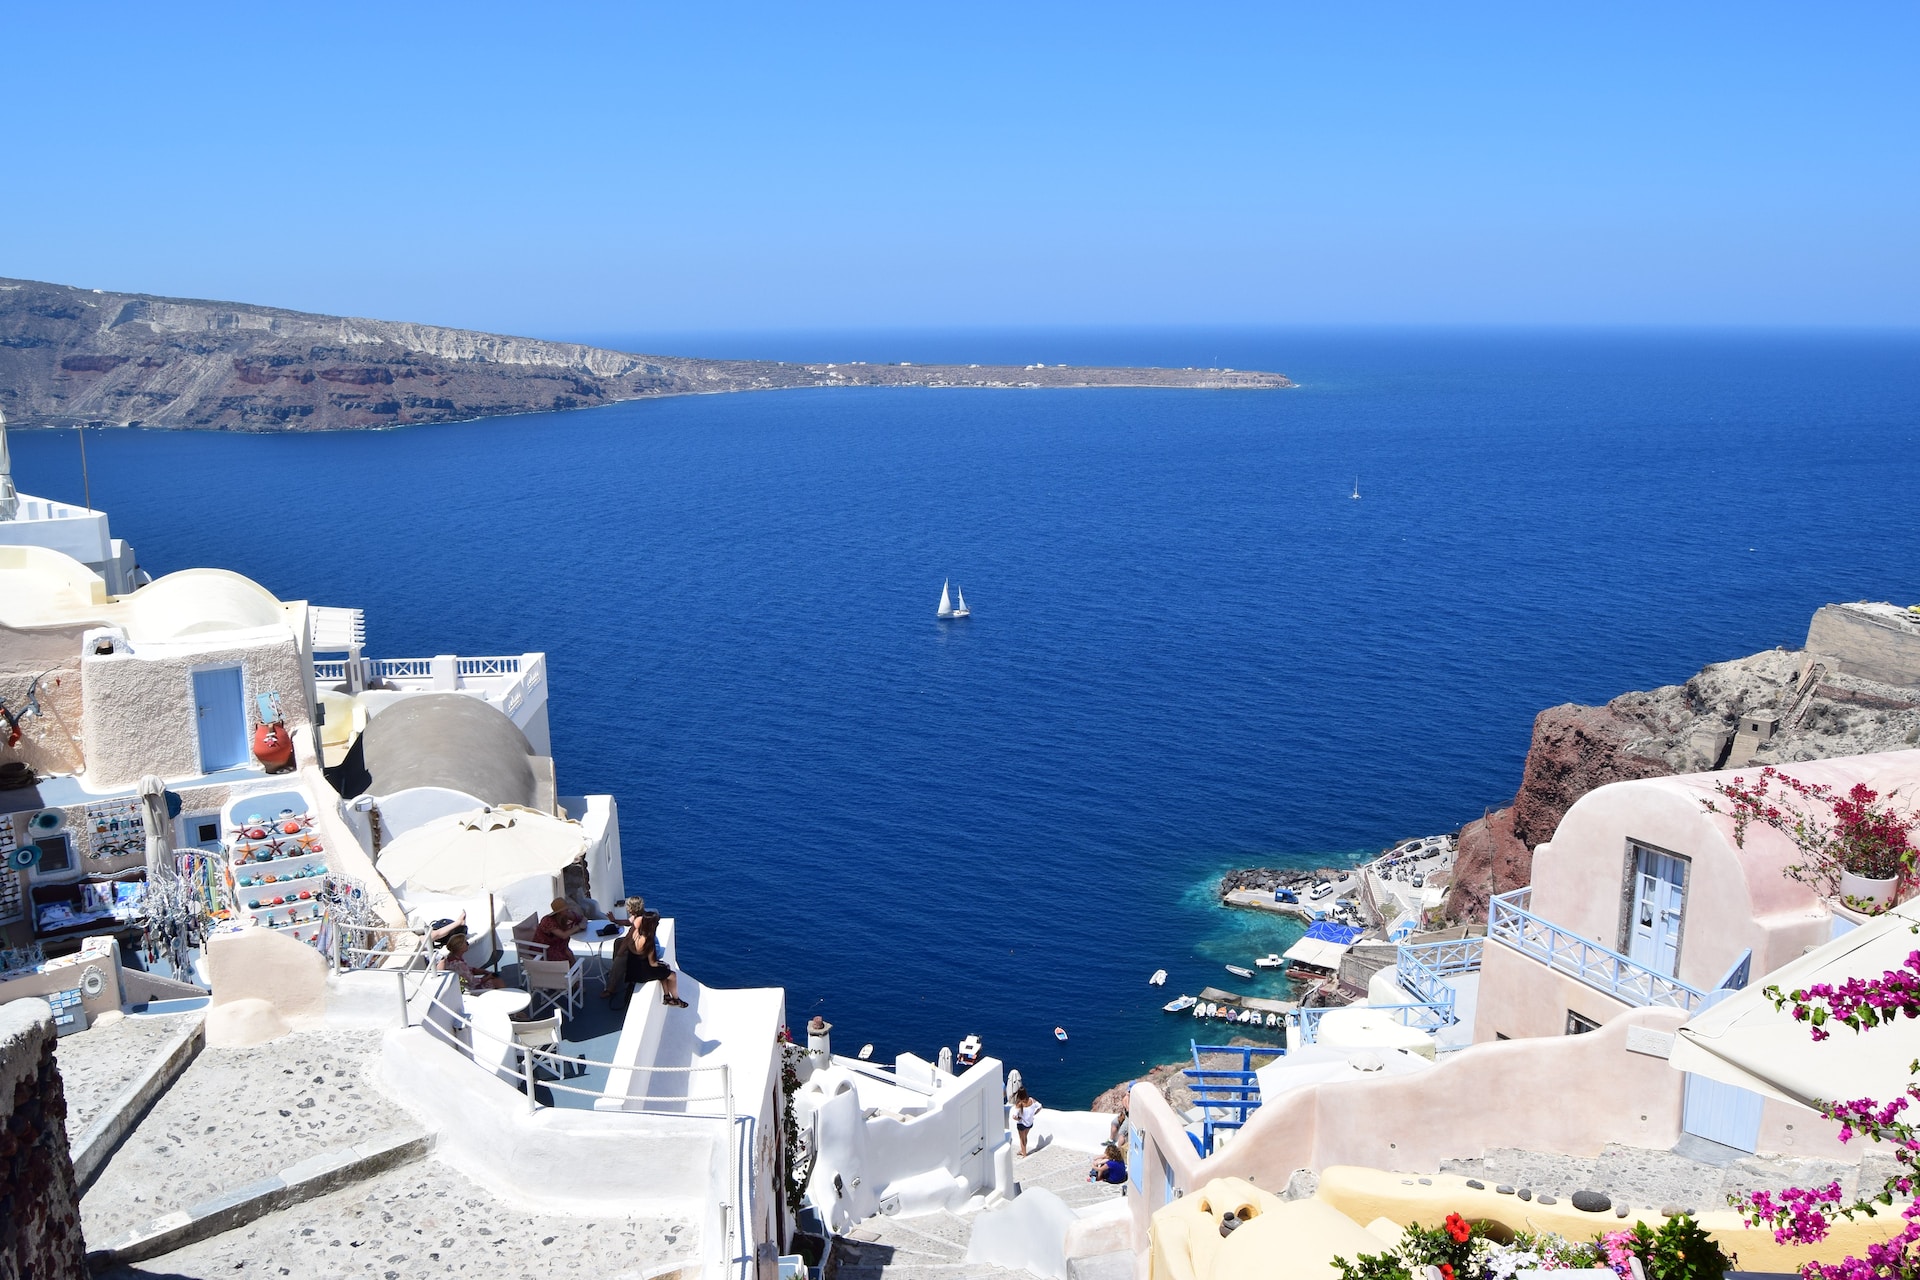 Wunderschne Aussichten: Pauschalreisen nach Griechenland bei allsun buchen!